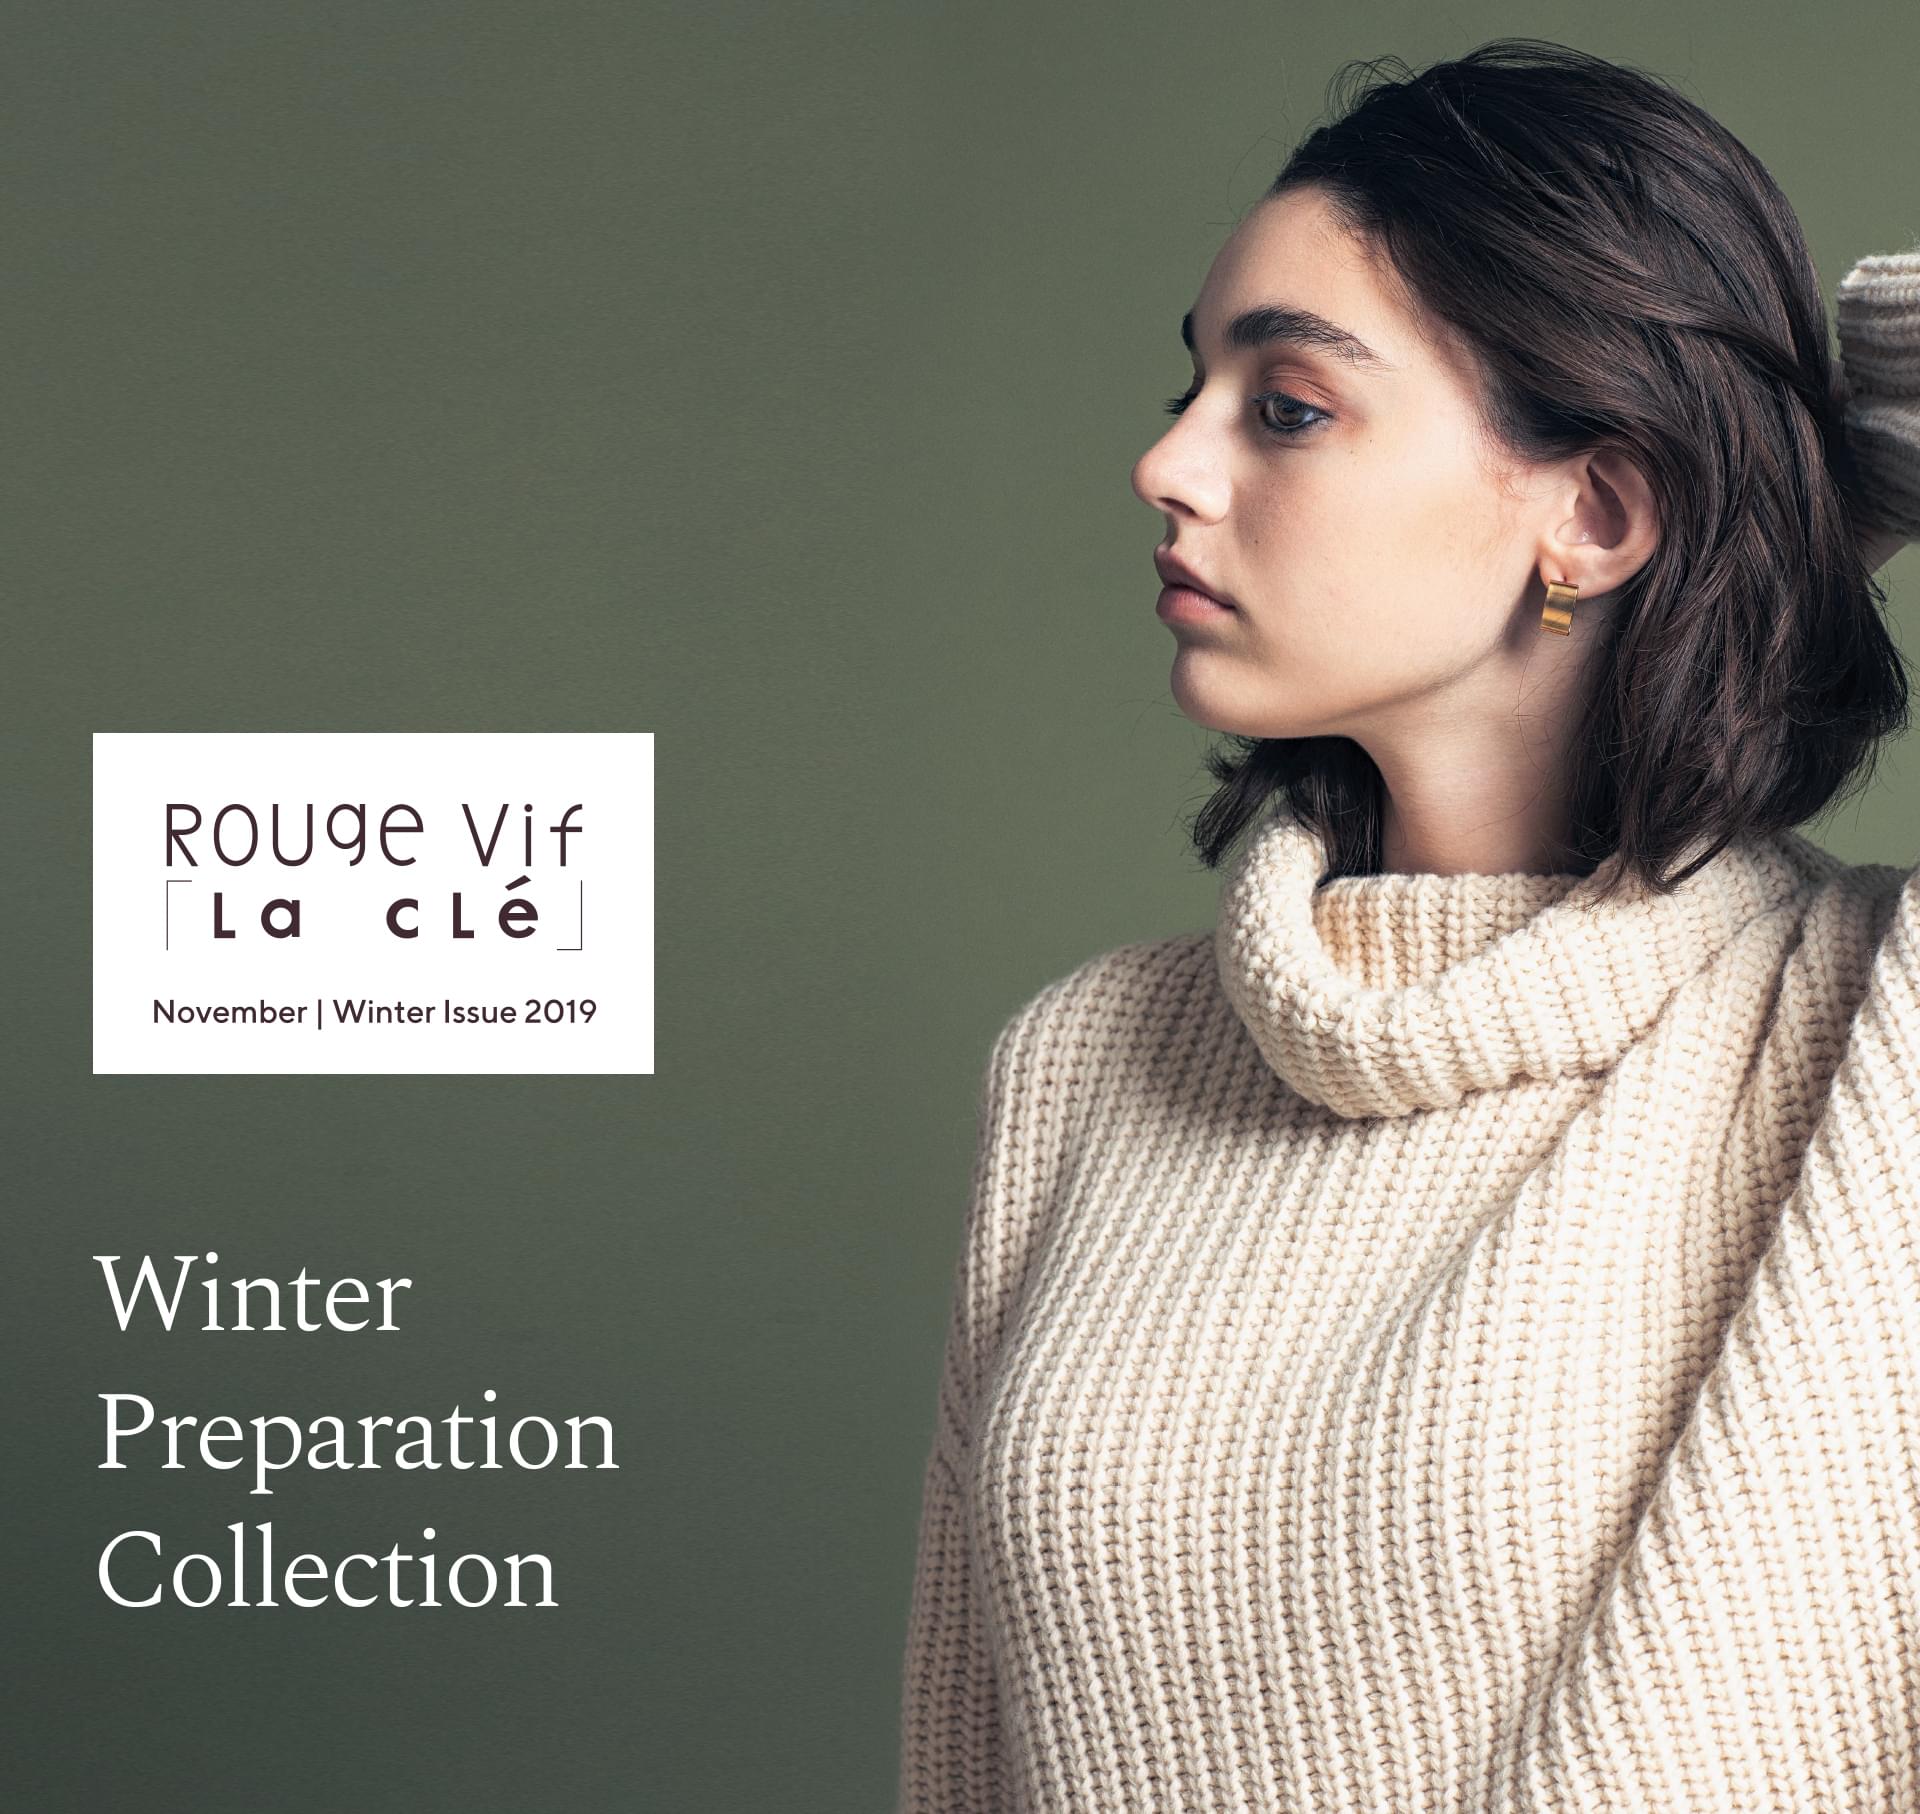 Knit Collection - Rouve vif la cle